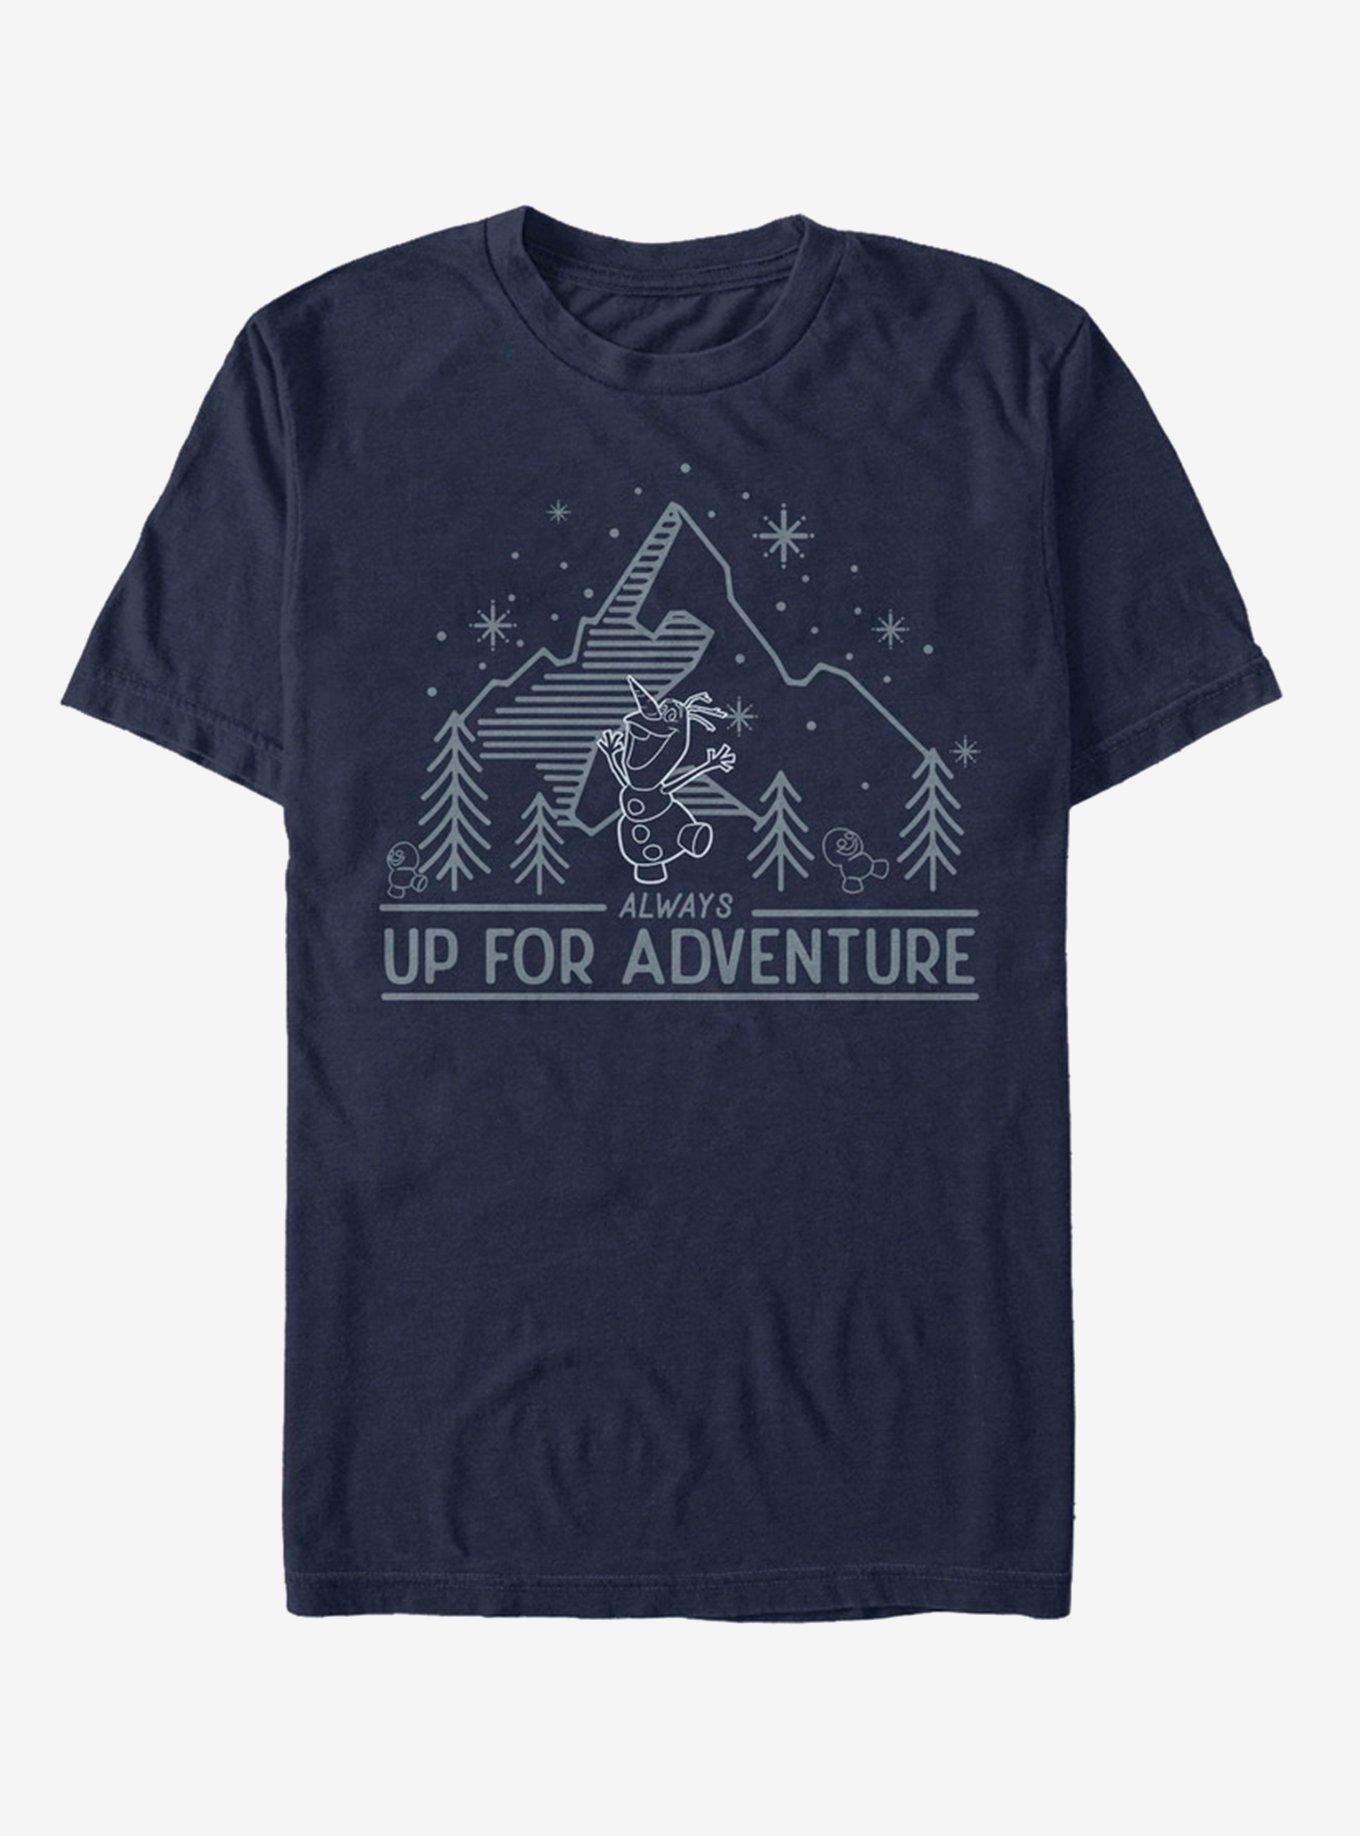 Disney Frozen Outdoor Adventure T-Shirt, NAVY, hi-res